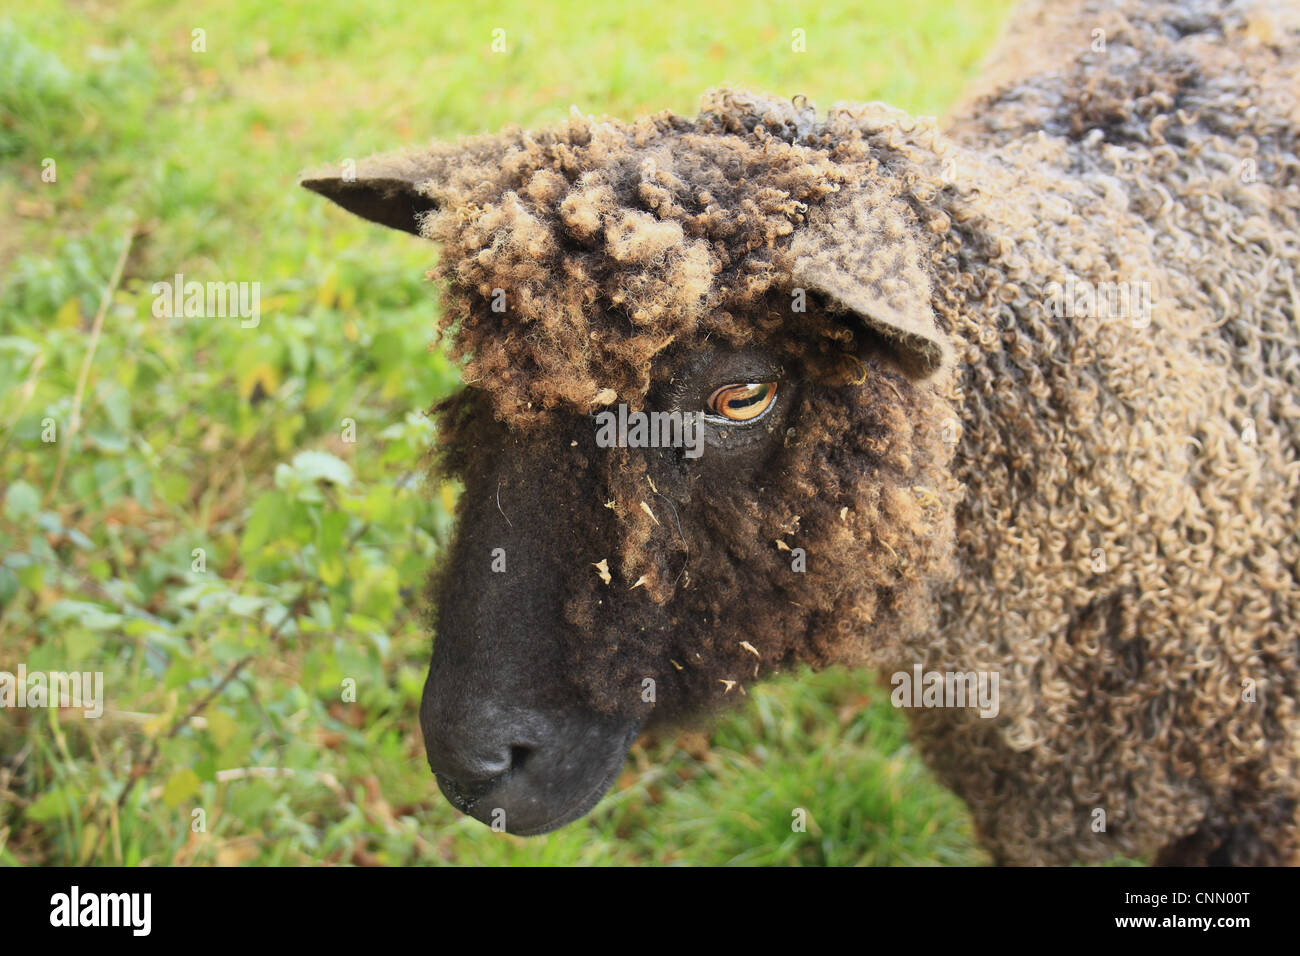 Inländische Schafe, schwarze Wensleydale, Ewe, vor kurzem geschoren, Nahaufnahme des Kopfes, Bacton, Suffolk, England, Oktober Stockfoto